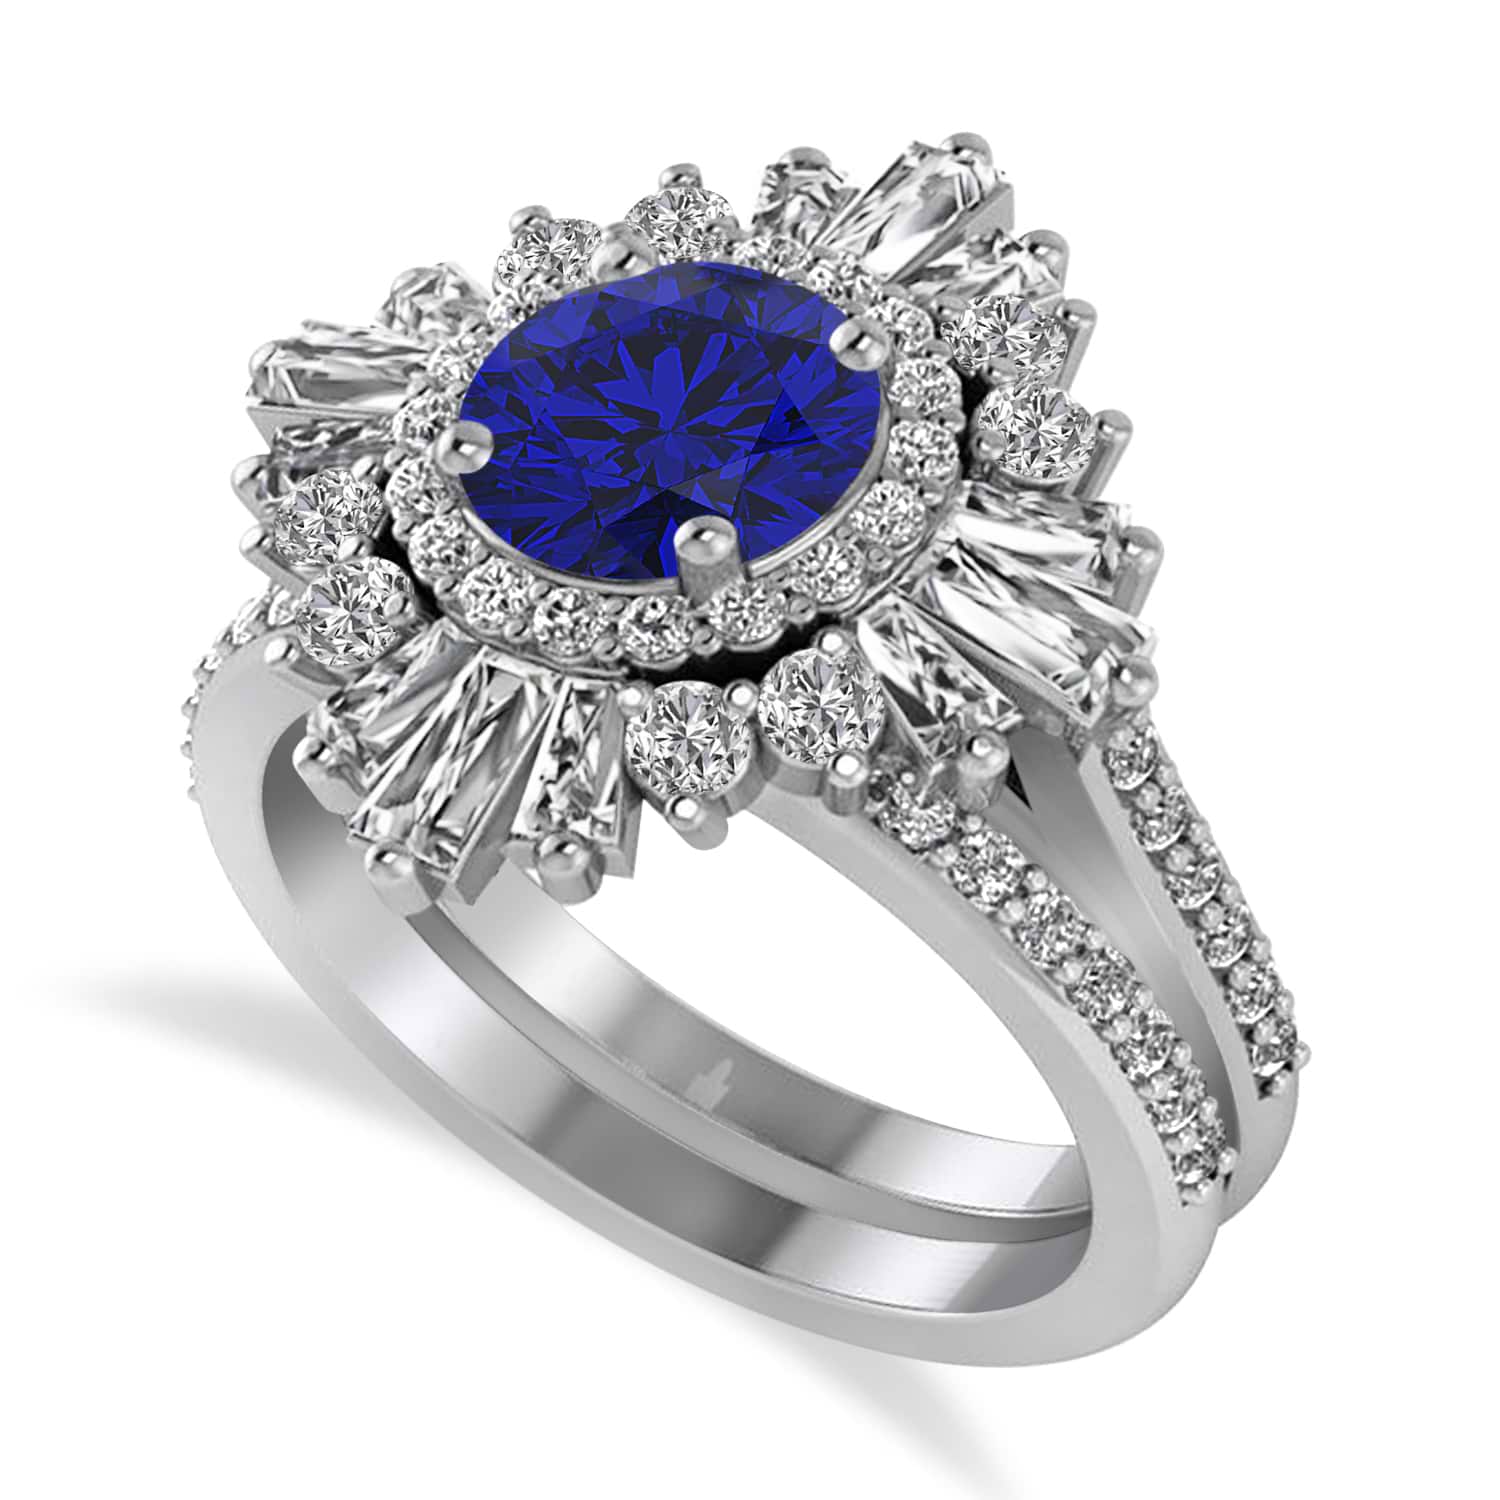 Blue Sapphire & Diamond Ballerina Engagement Ring 14k White Gold (2.74 ctw)